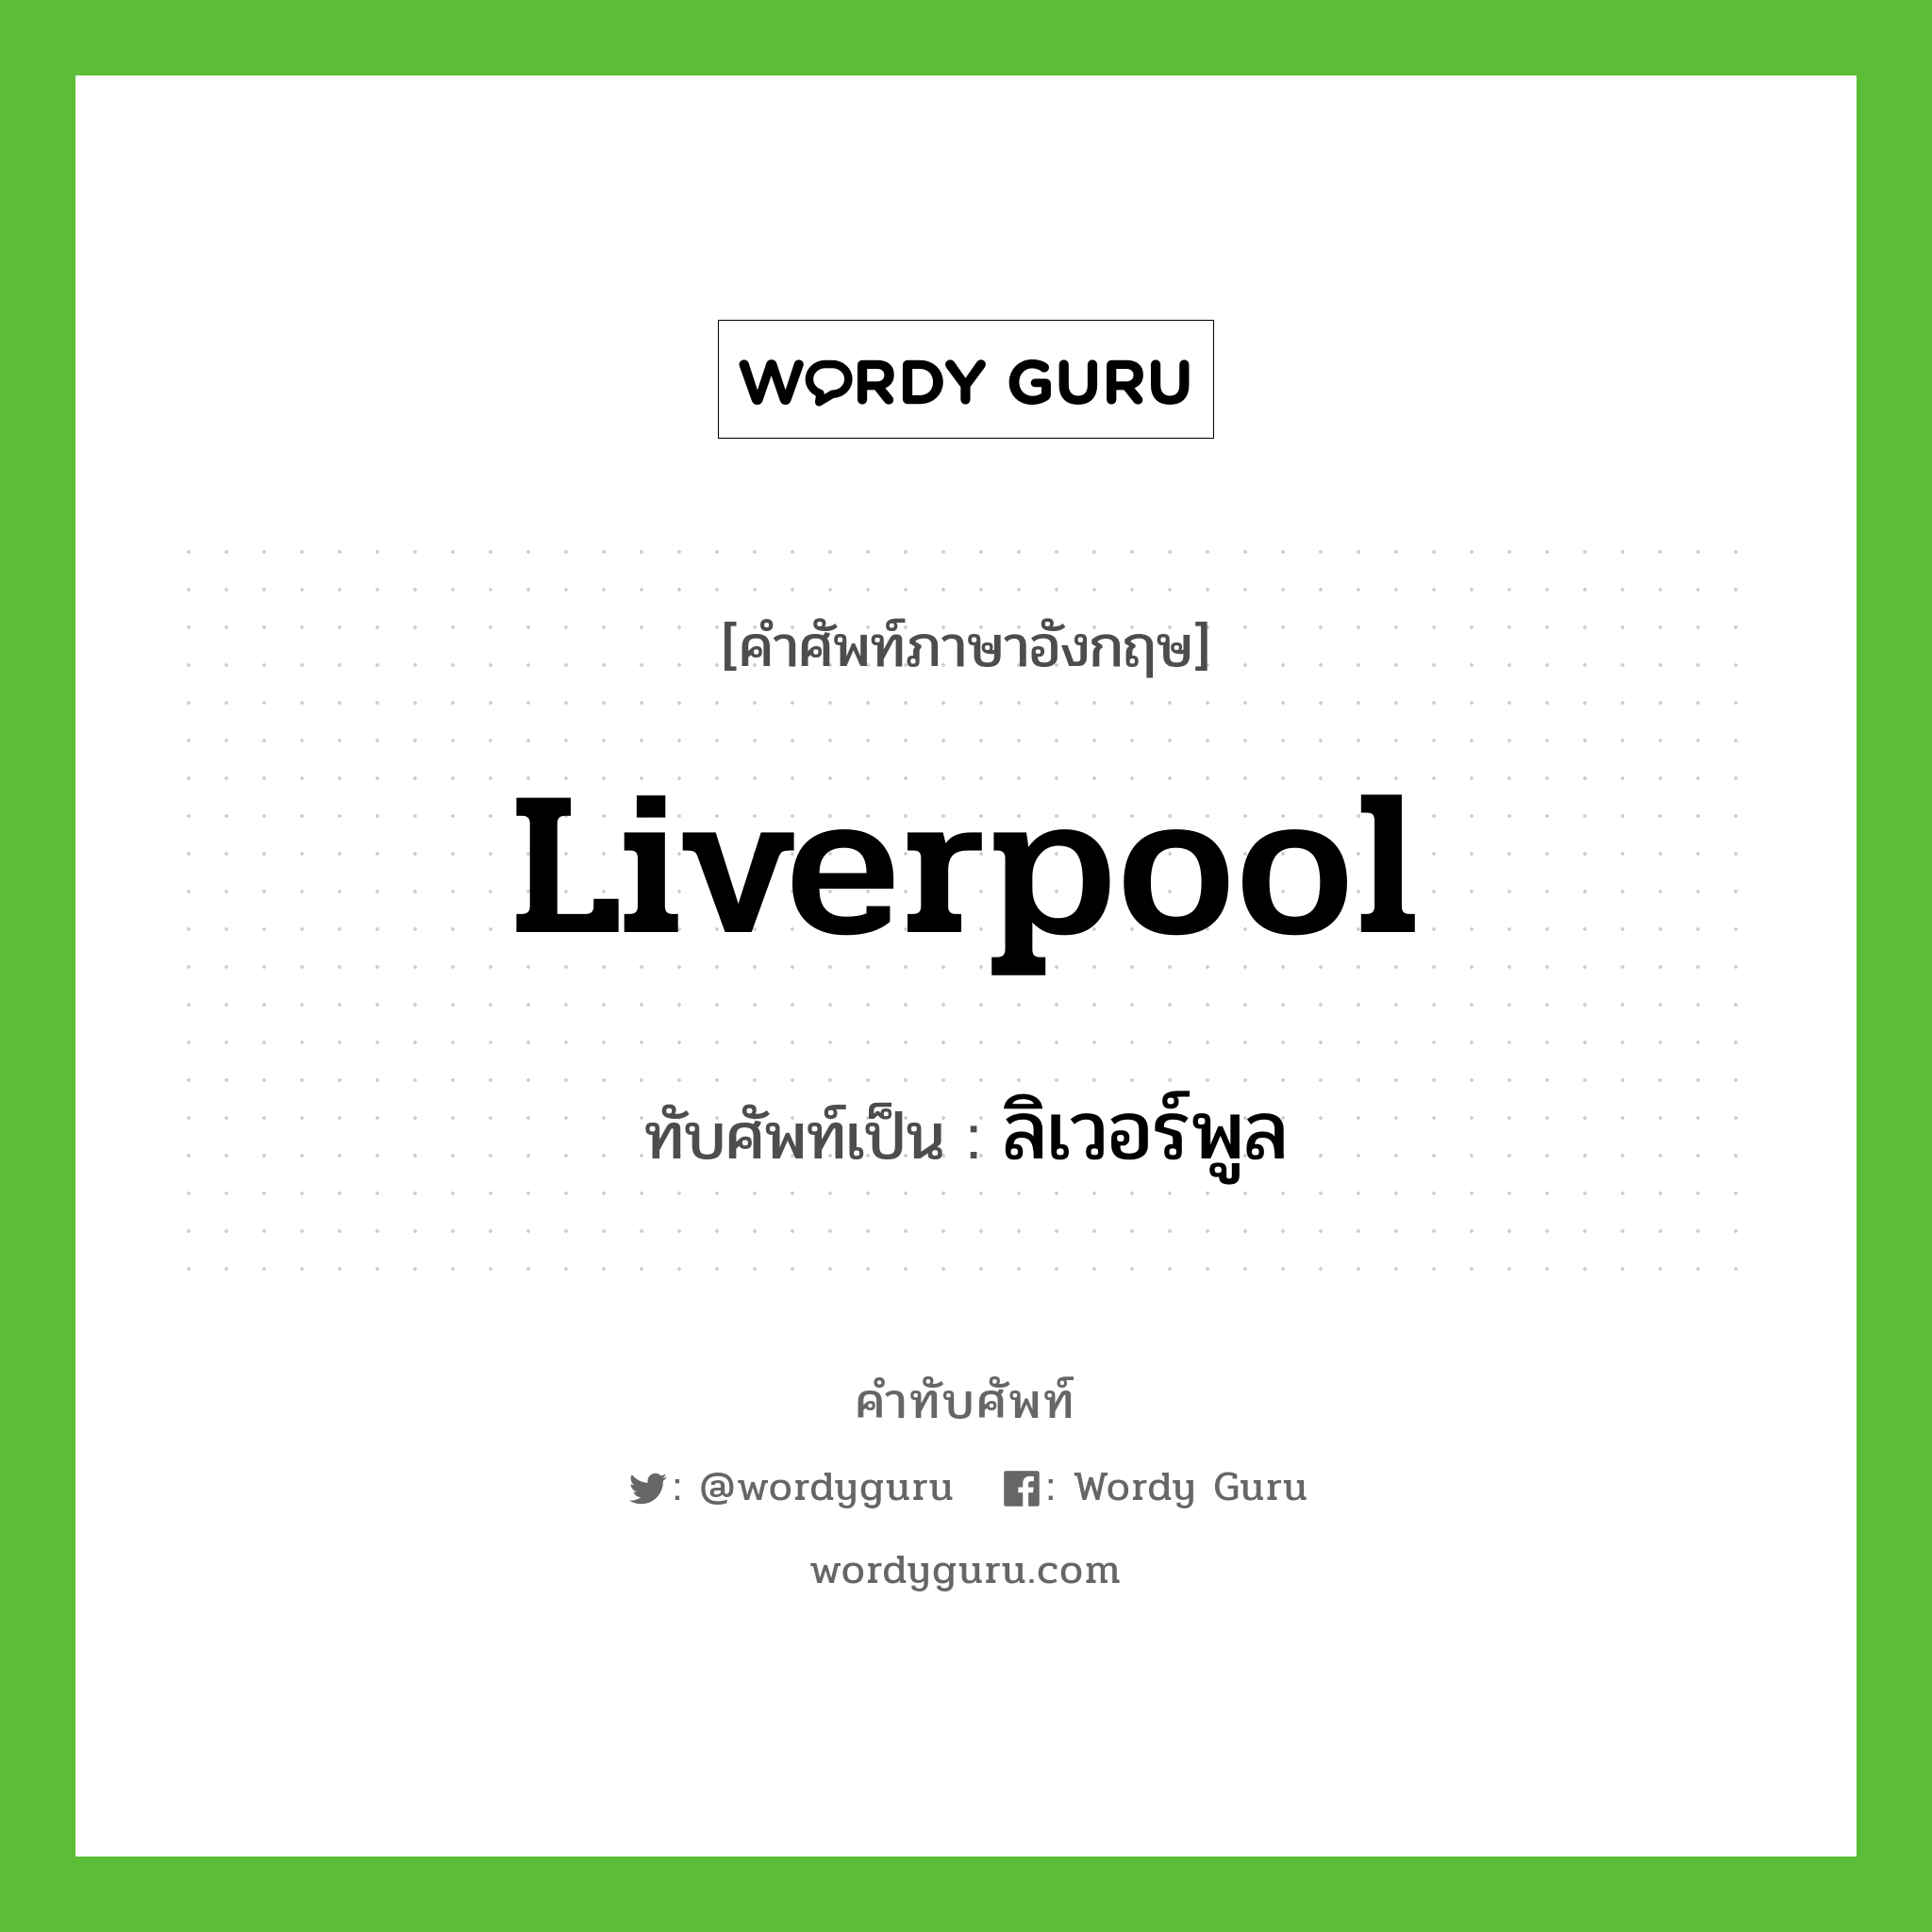 Liverpool เขียนเป็นคำไทยว่าอะไร?, คำศัพท์ภาษาอังกฤษ Liverpool ทับศัพท์เป็น ลิเวอร์พูล